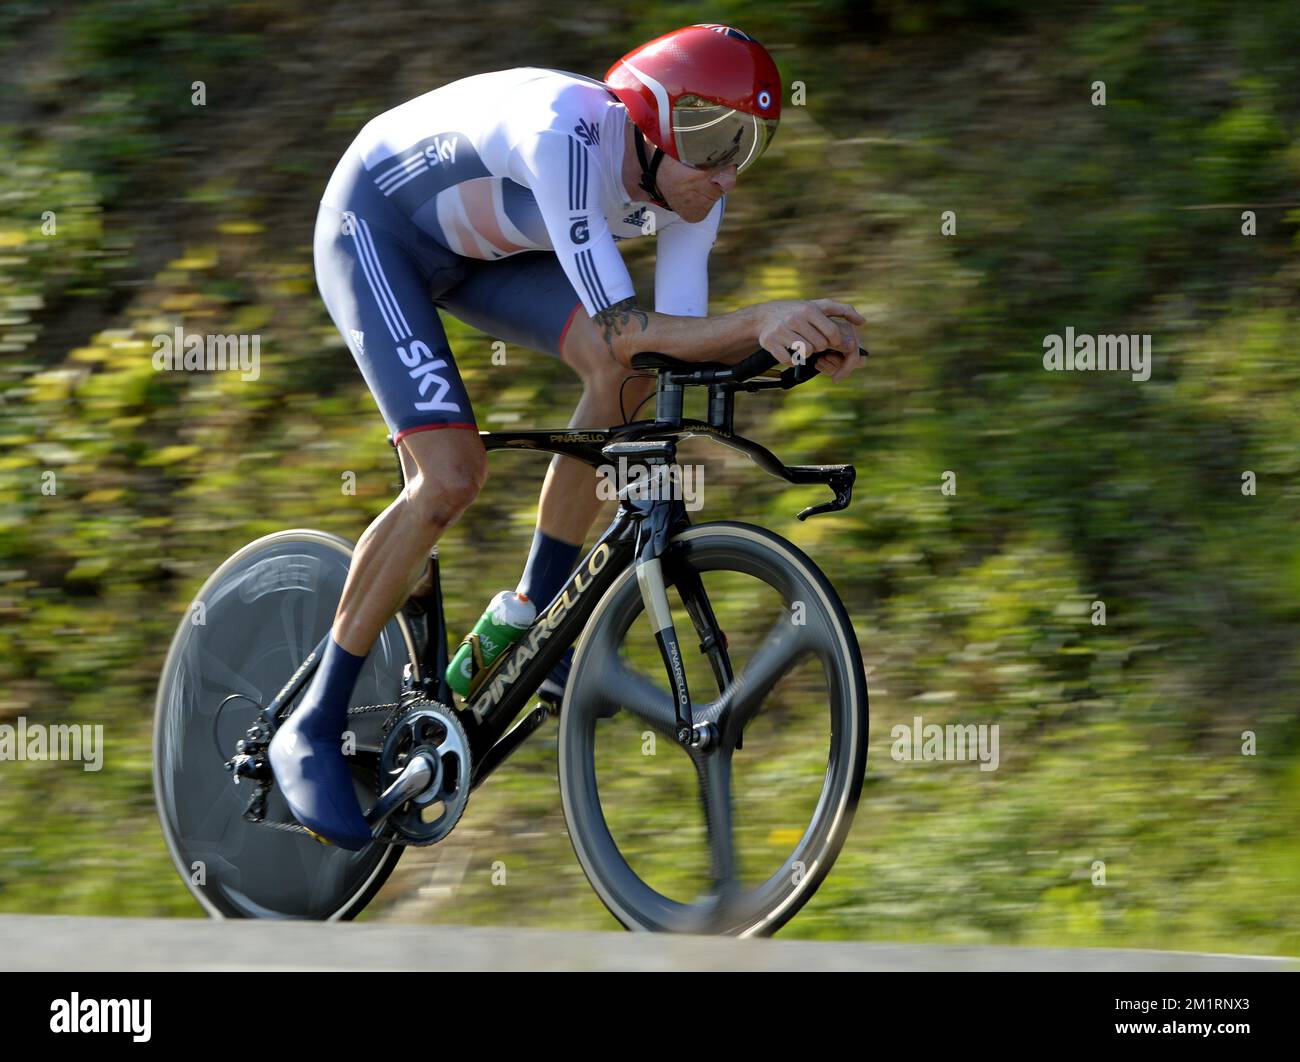 Bradley Wiggins in azione durante la prova a tempo ELITE Men ai Campionati Mondiali di Ciclismo a Firenze, mercoledì 25 settembre 2013. Foto Stock